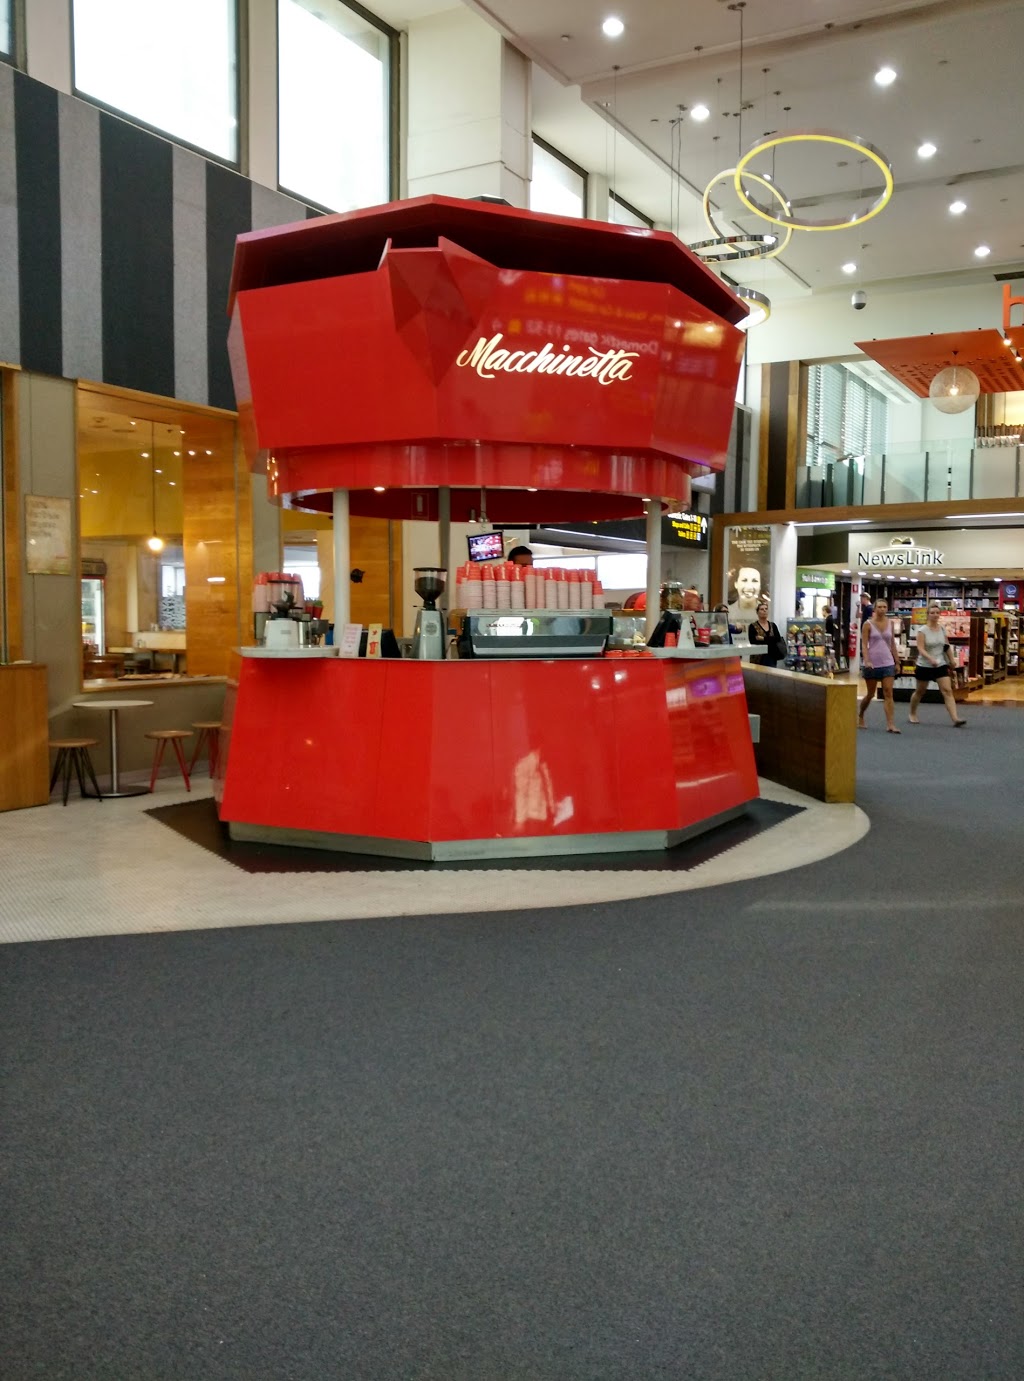 Macchinetta | Located Mezzanine Level, T3, Melbourne Airport, Melbourne VIC 3045, Australia | Phone: (03) 9330 0946